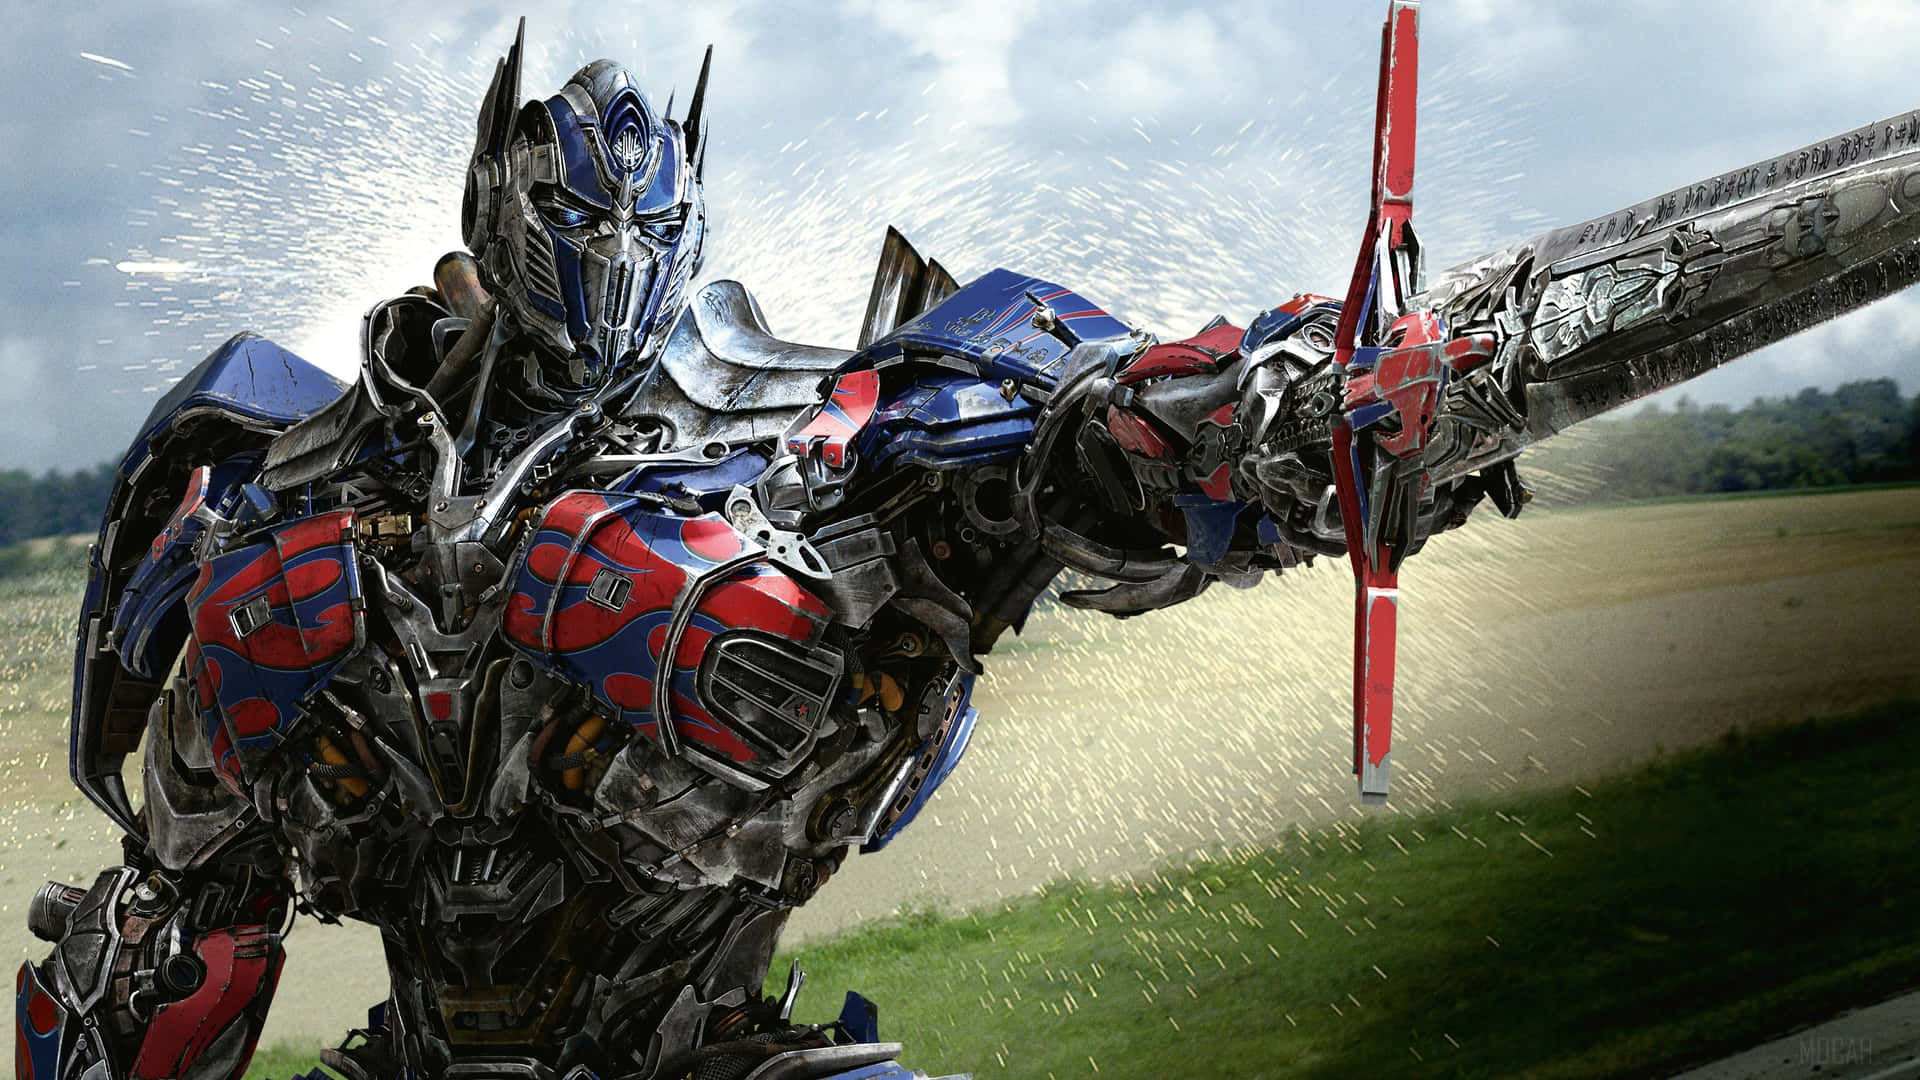 Nếu bạn muốn tìm kiếm nhiều hình ảnh nhất về Optimus Prime đẹp tuyệt vời, hãy xem qua bộ sưu tập gồm hơn 93 hình nền 4K của chiến binh Autobot này. Bạn sẽ được chiêm ngưỡng những chi tiết tuyệt vời và màu sắc sáng tươi của bức tranh ảnh này.